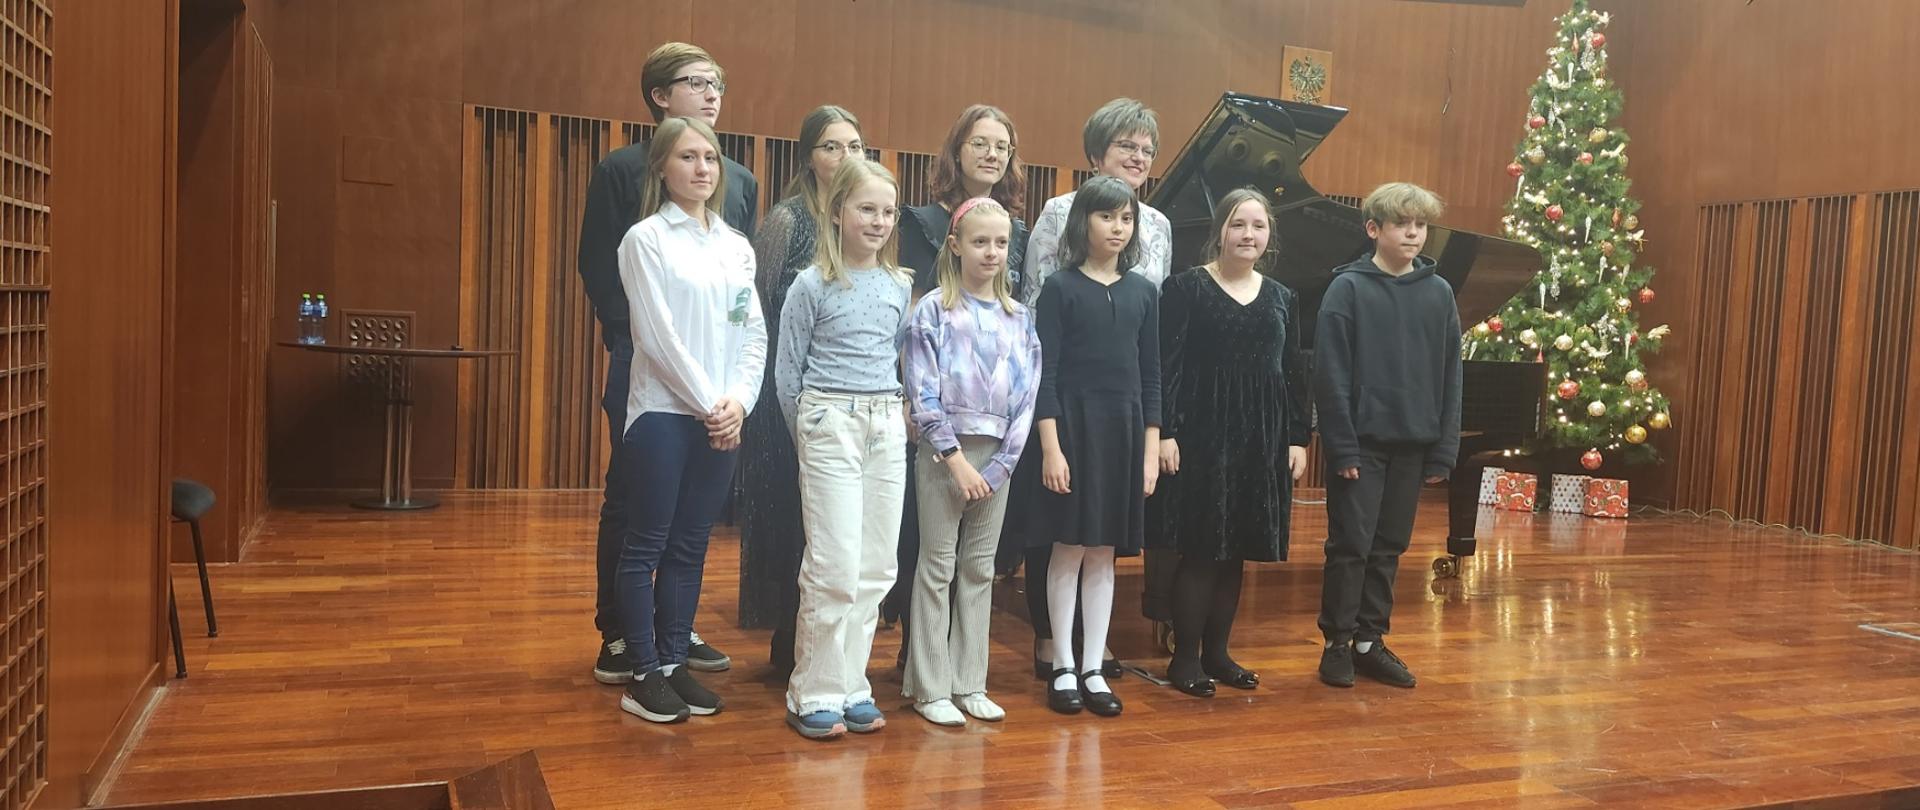 Zdjęcie uczestników warsztatów pianistycznych wraz z prof. Oksaną Rapitą w sali koncertowej szkoły. W tle brązowa scena, fortepian oraz choinka.